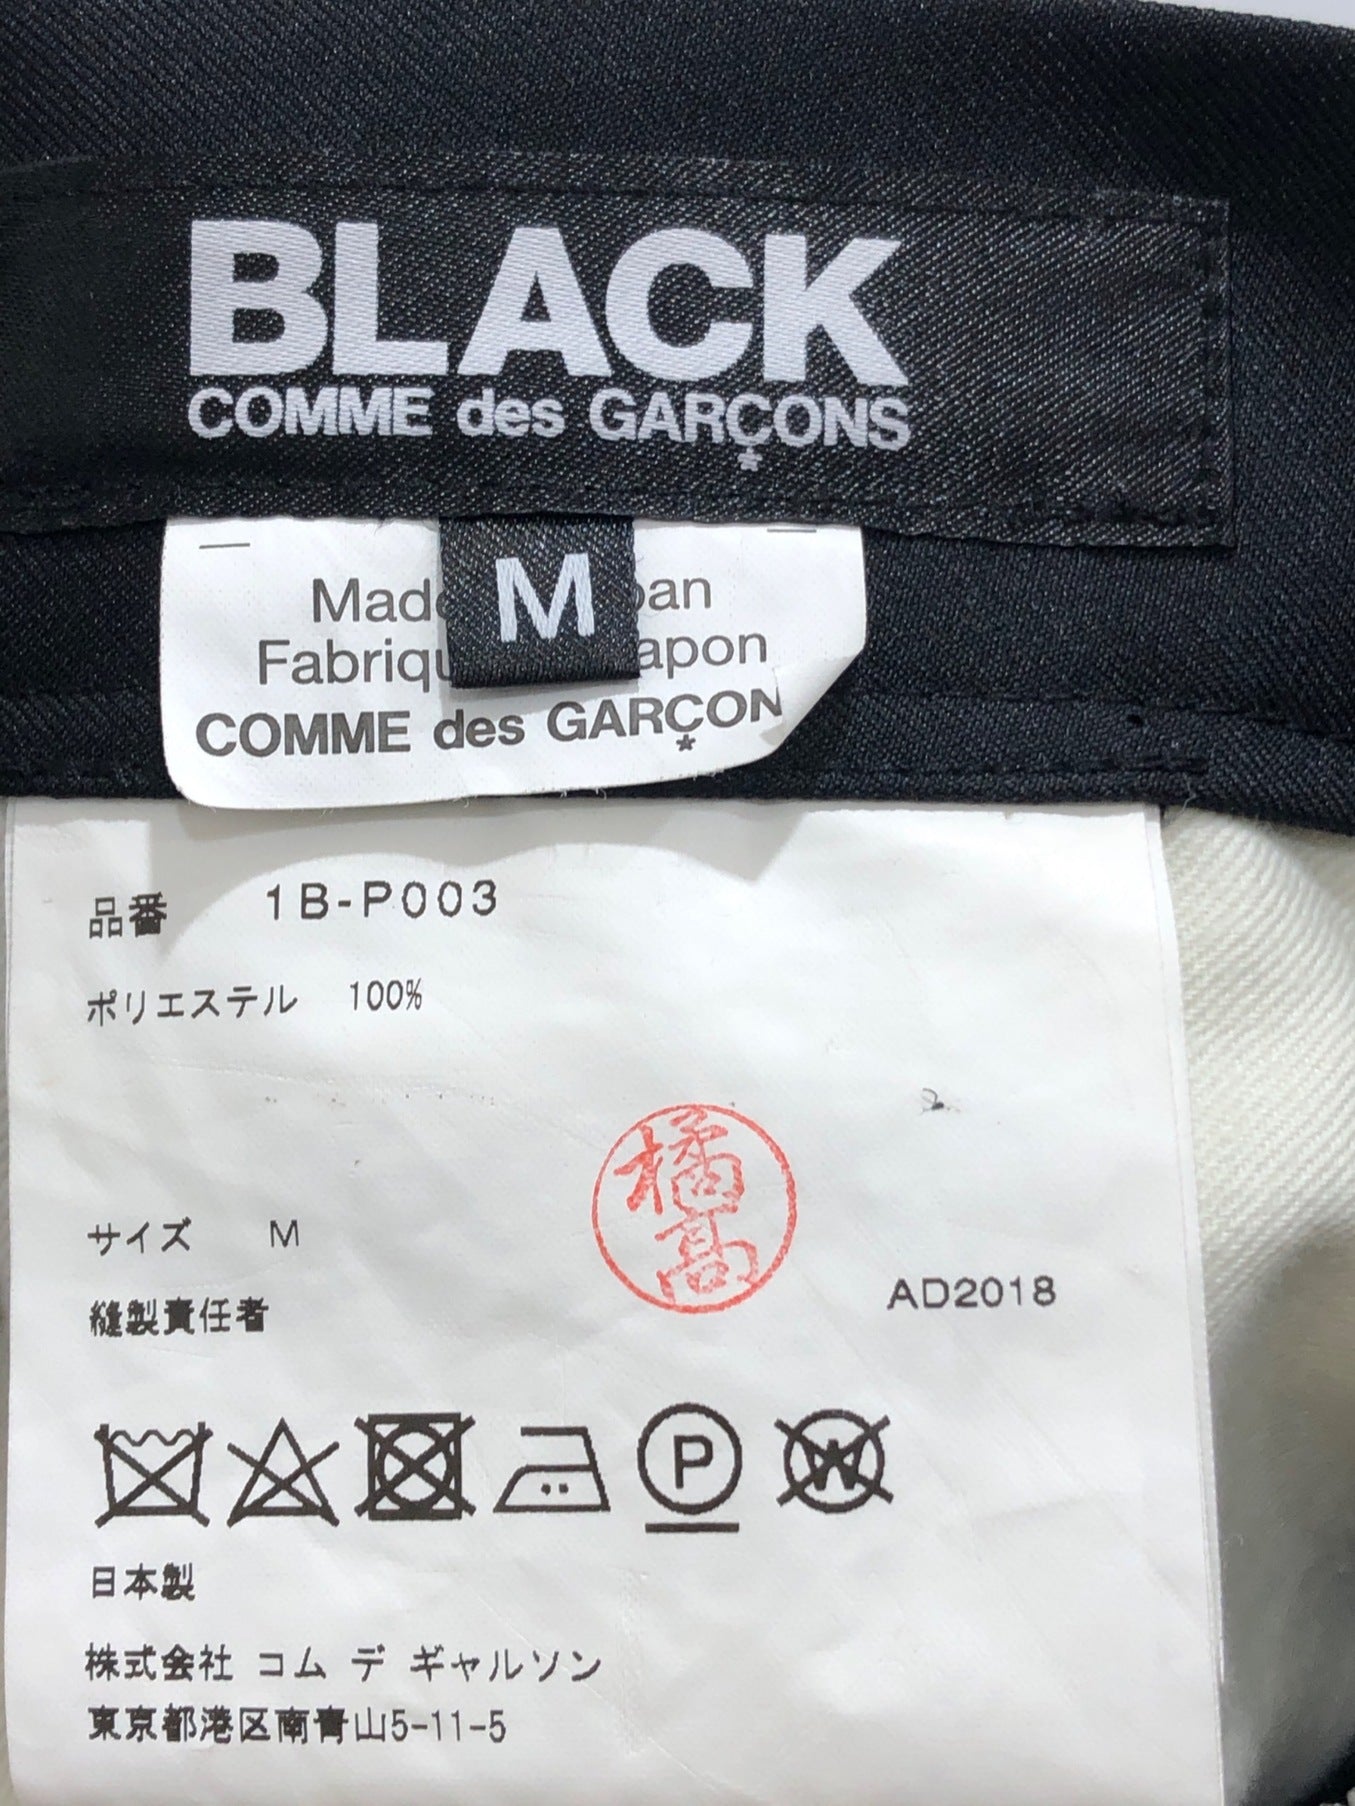 Black Comme des Garcons สีกางเกง 1B-P003